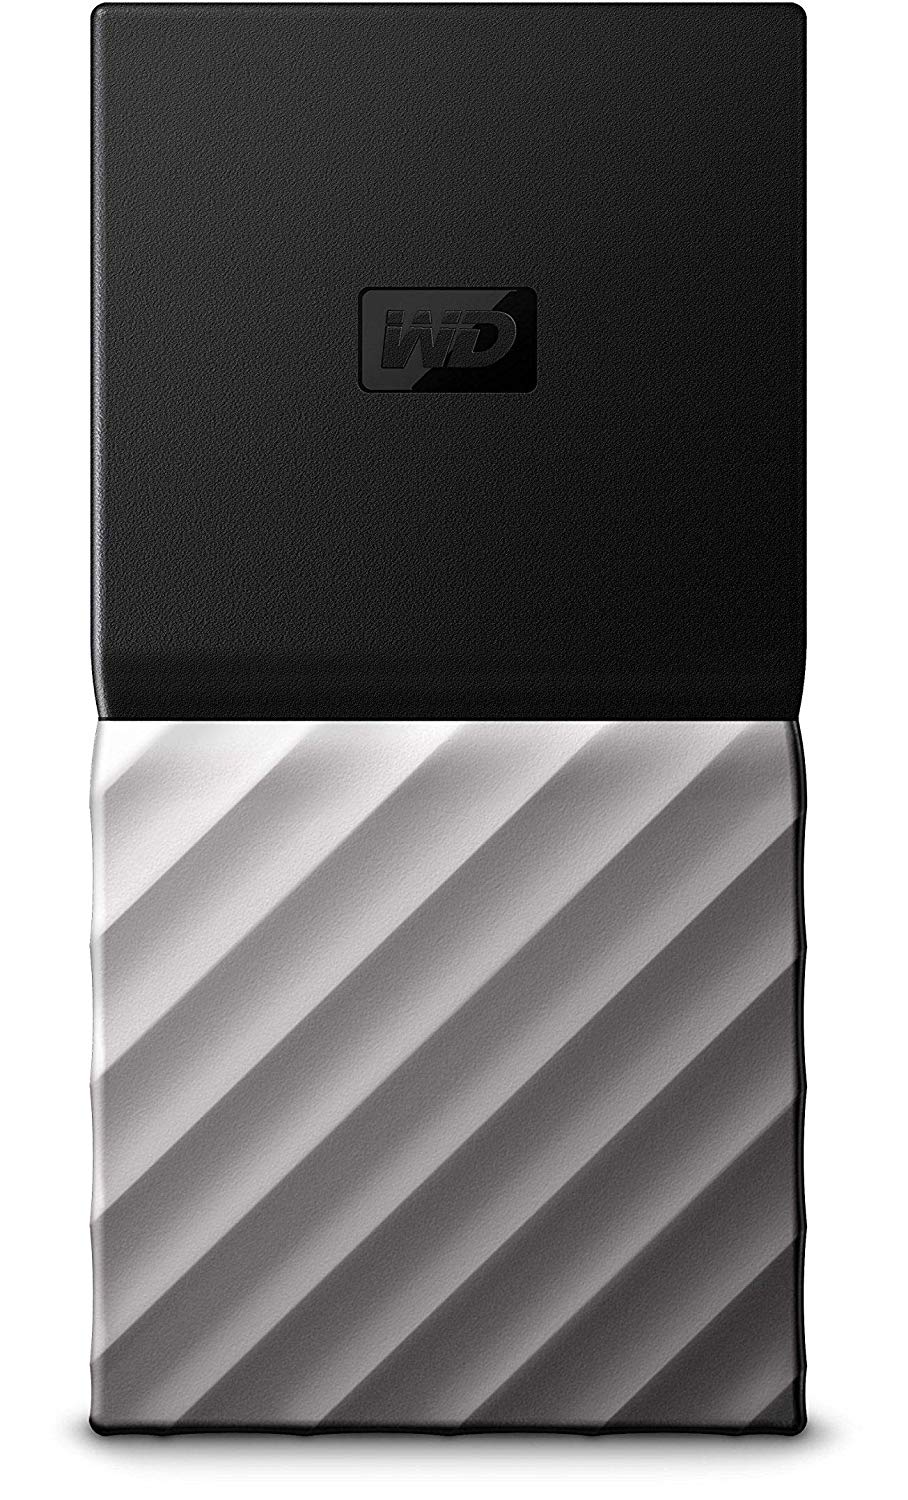 Western Digital WD 256GB My Passport SSD Portable Storage - USB 3.1 - Black-Gray - WDBK3E2560PSL-WESN